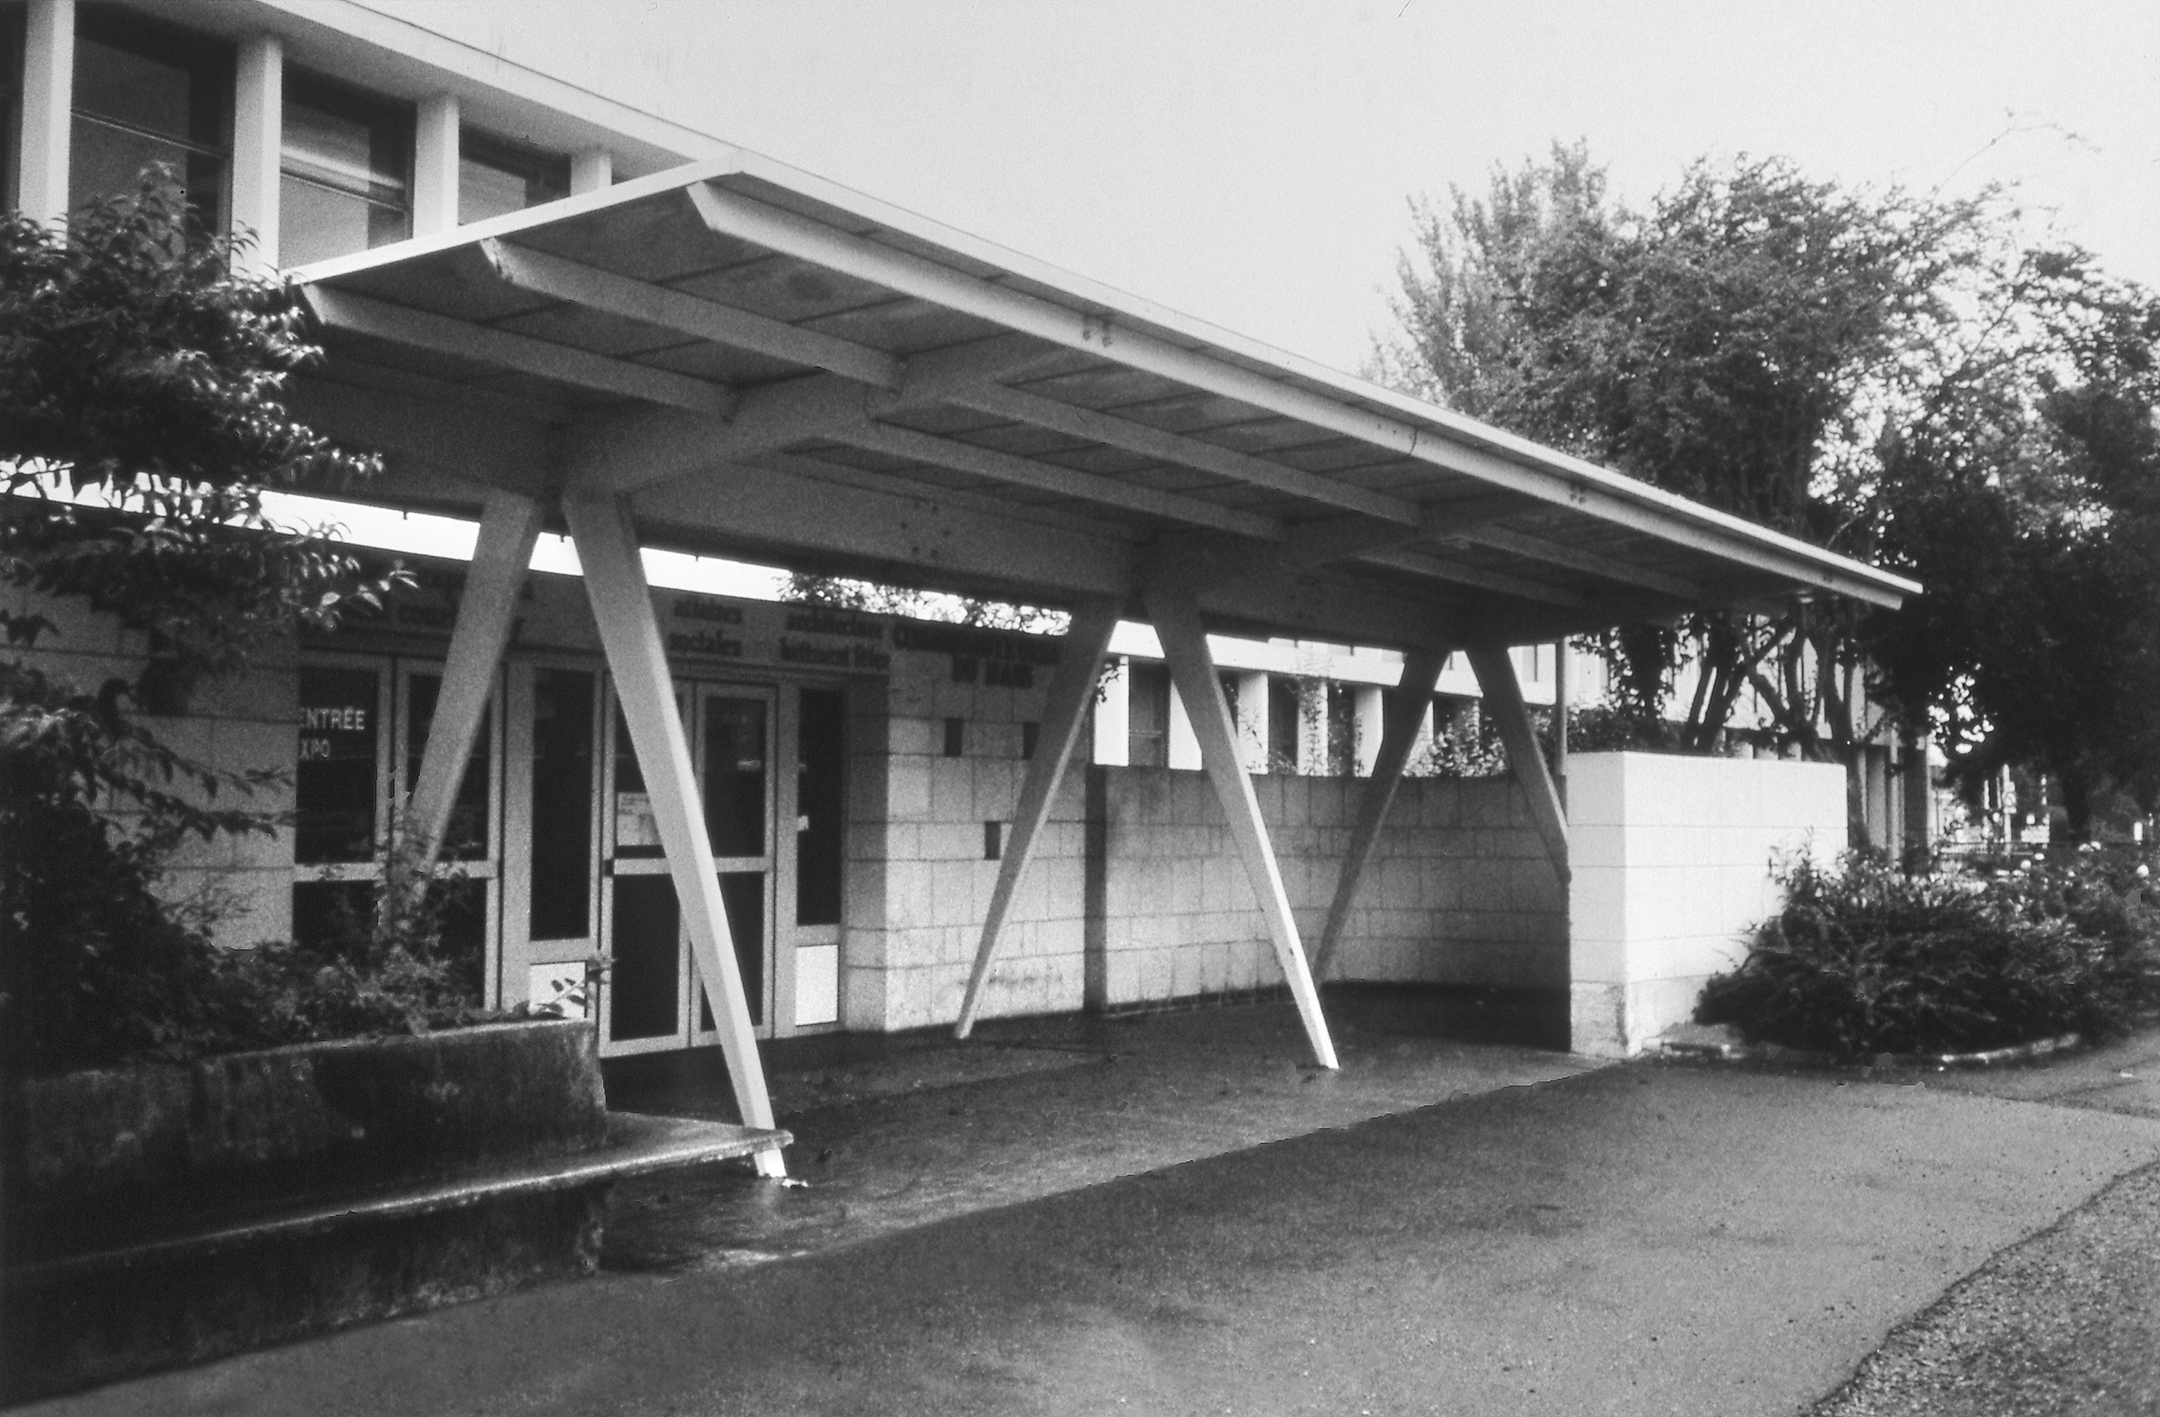 Sécurité Sociale building, Le Mans (architect J. Le Couteur, 1951). Pressed steel awning, designed by Jean Prouvé, 1953–1954.